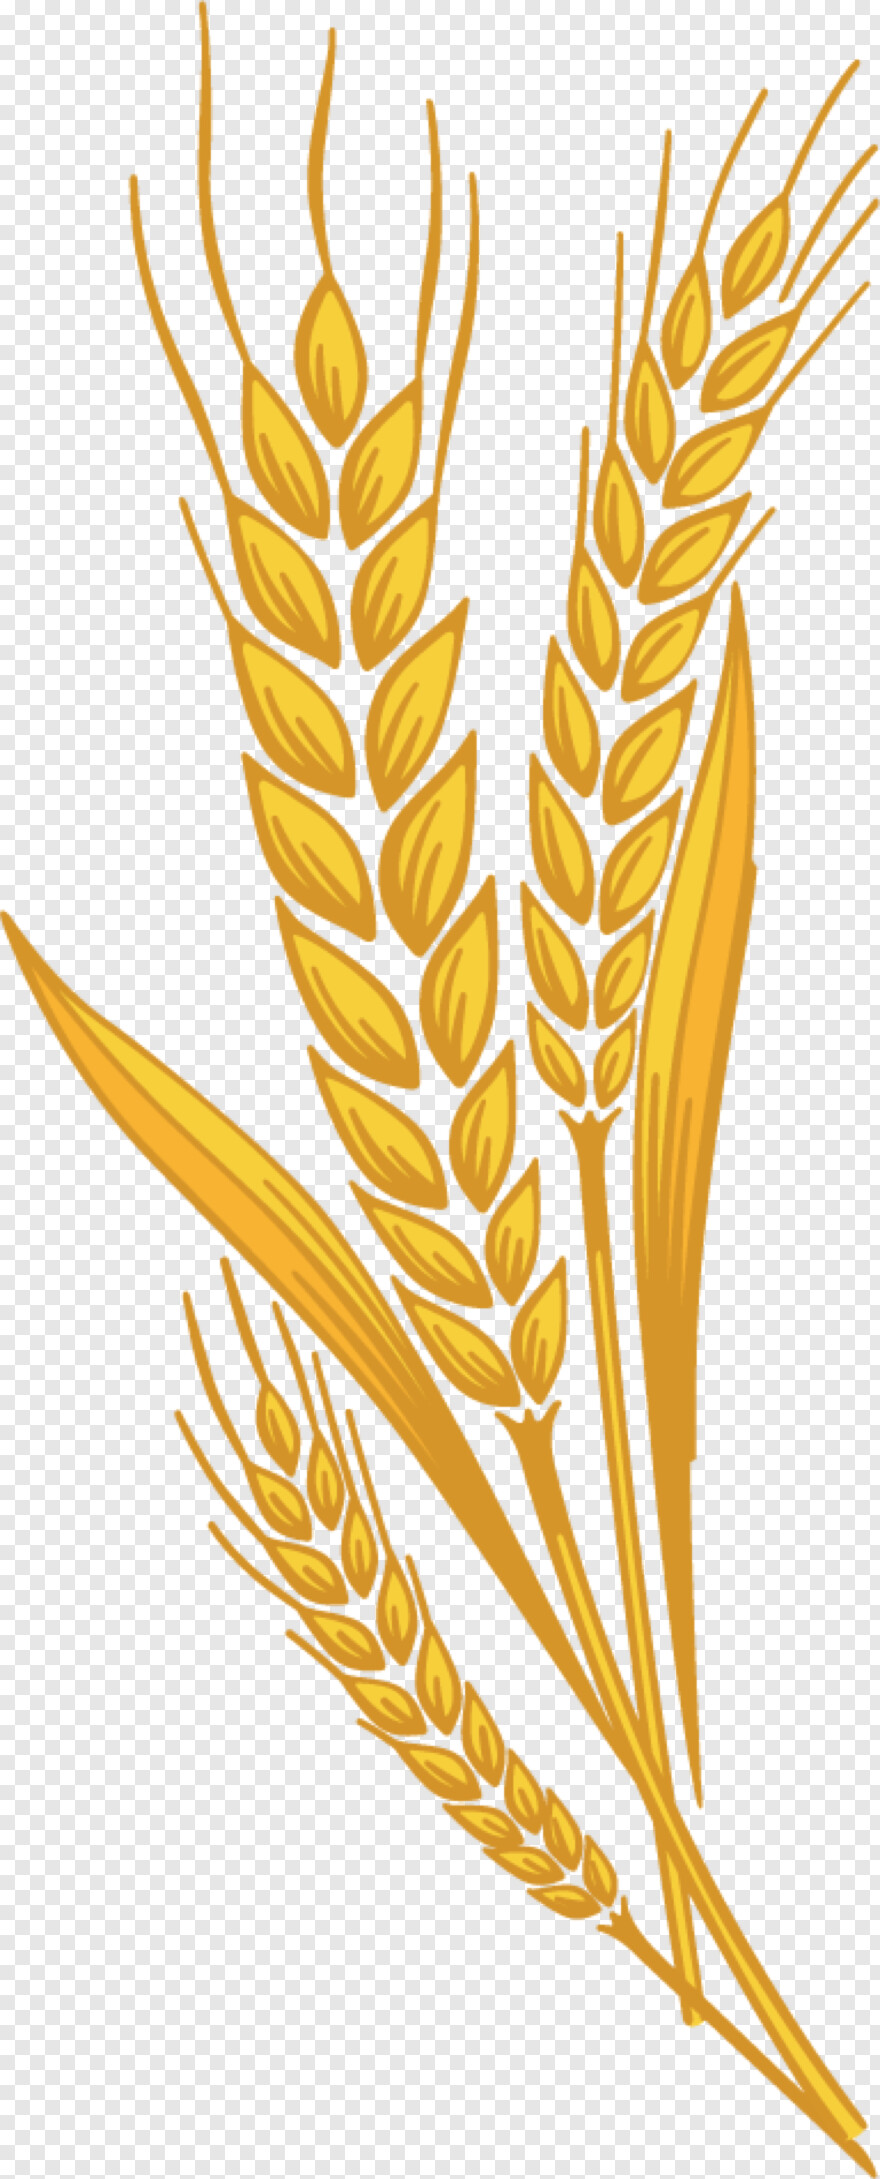 wheat-stalk # 403017